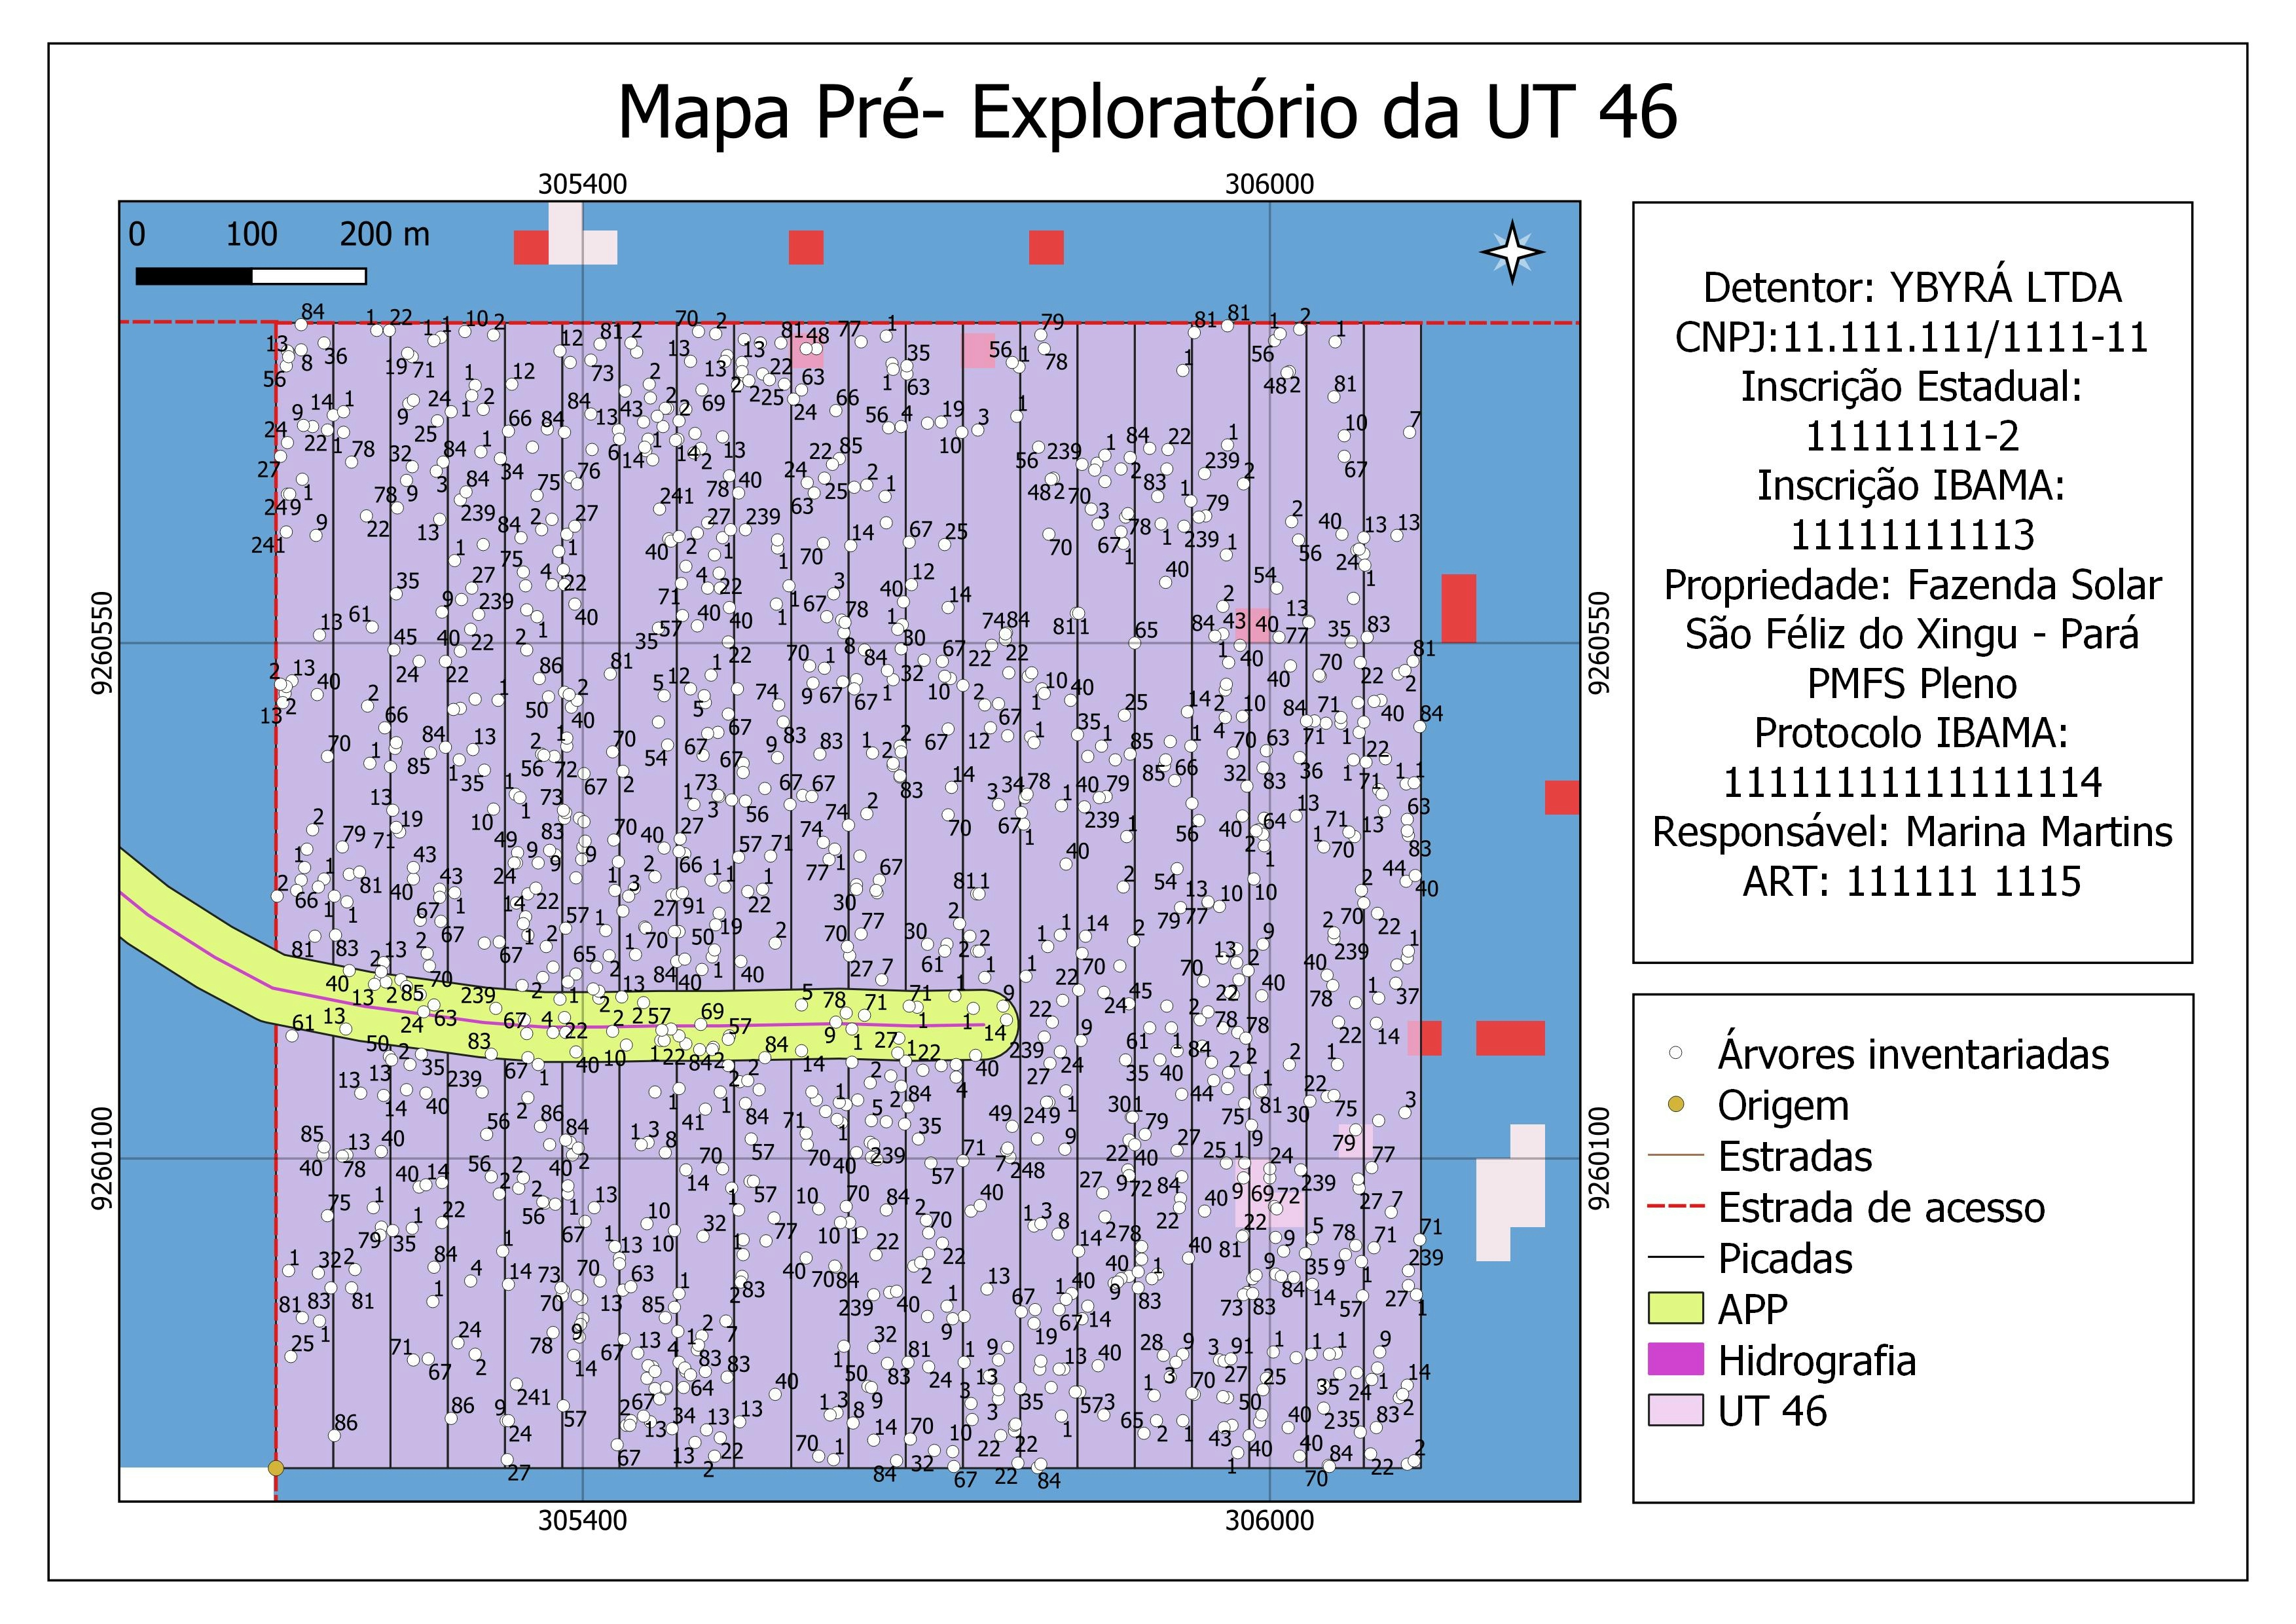 Mapa Pré-Exploratório em AMF